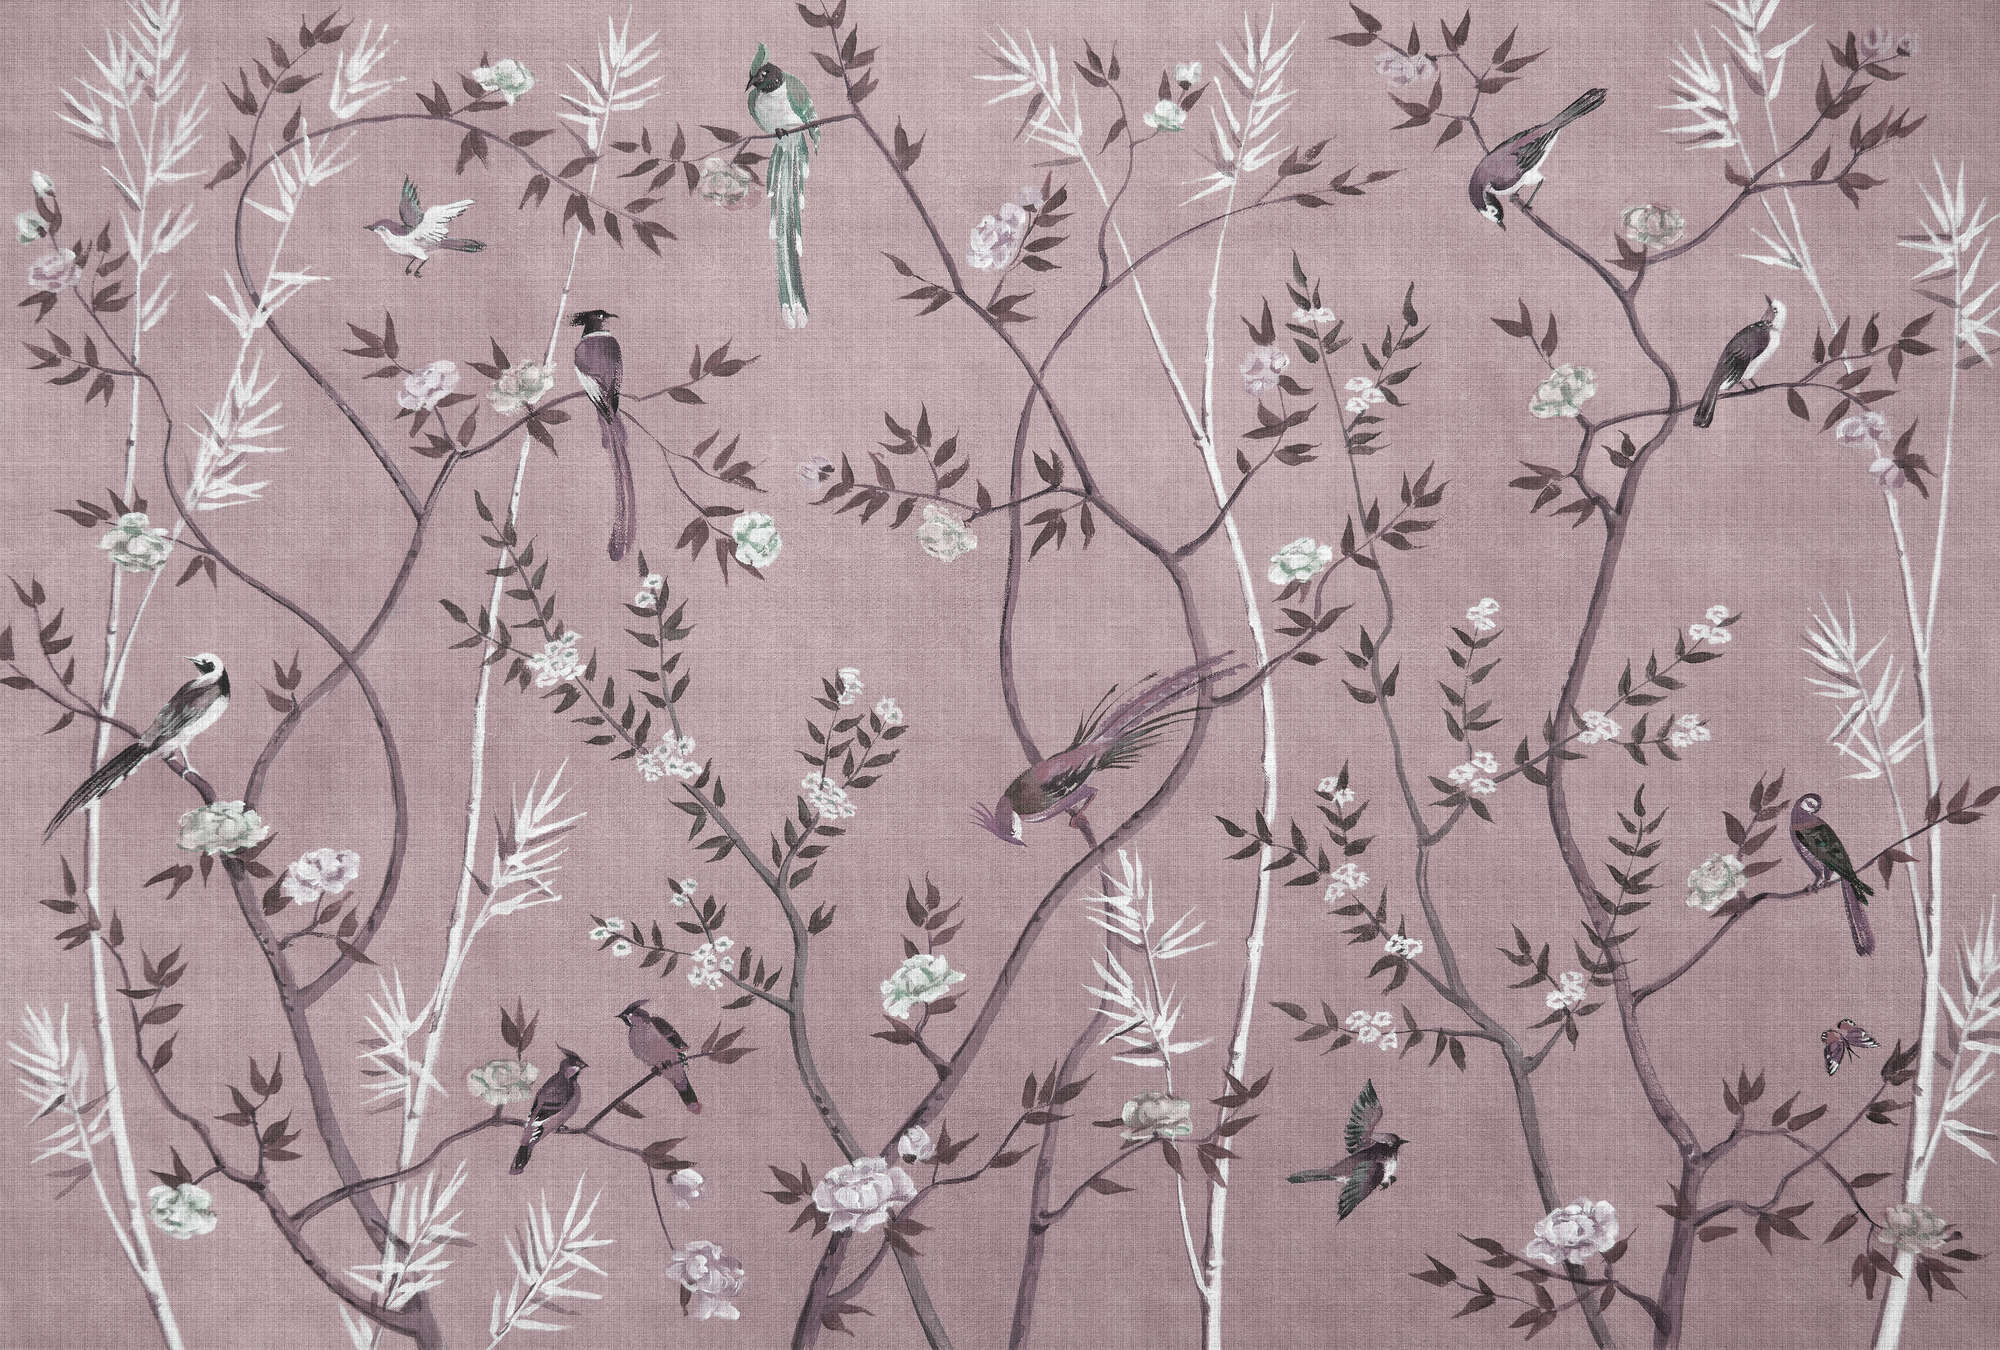             Tea Room 3 - Papel pintado de diseño Birds & Blossoms en rosa y blanco
        